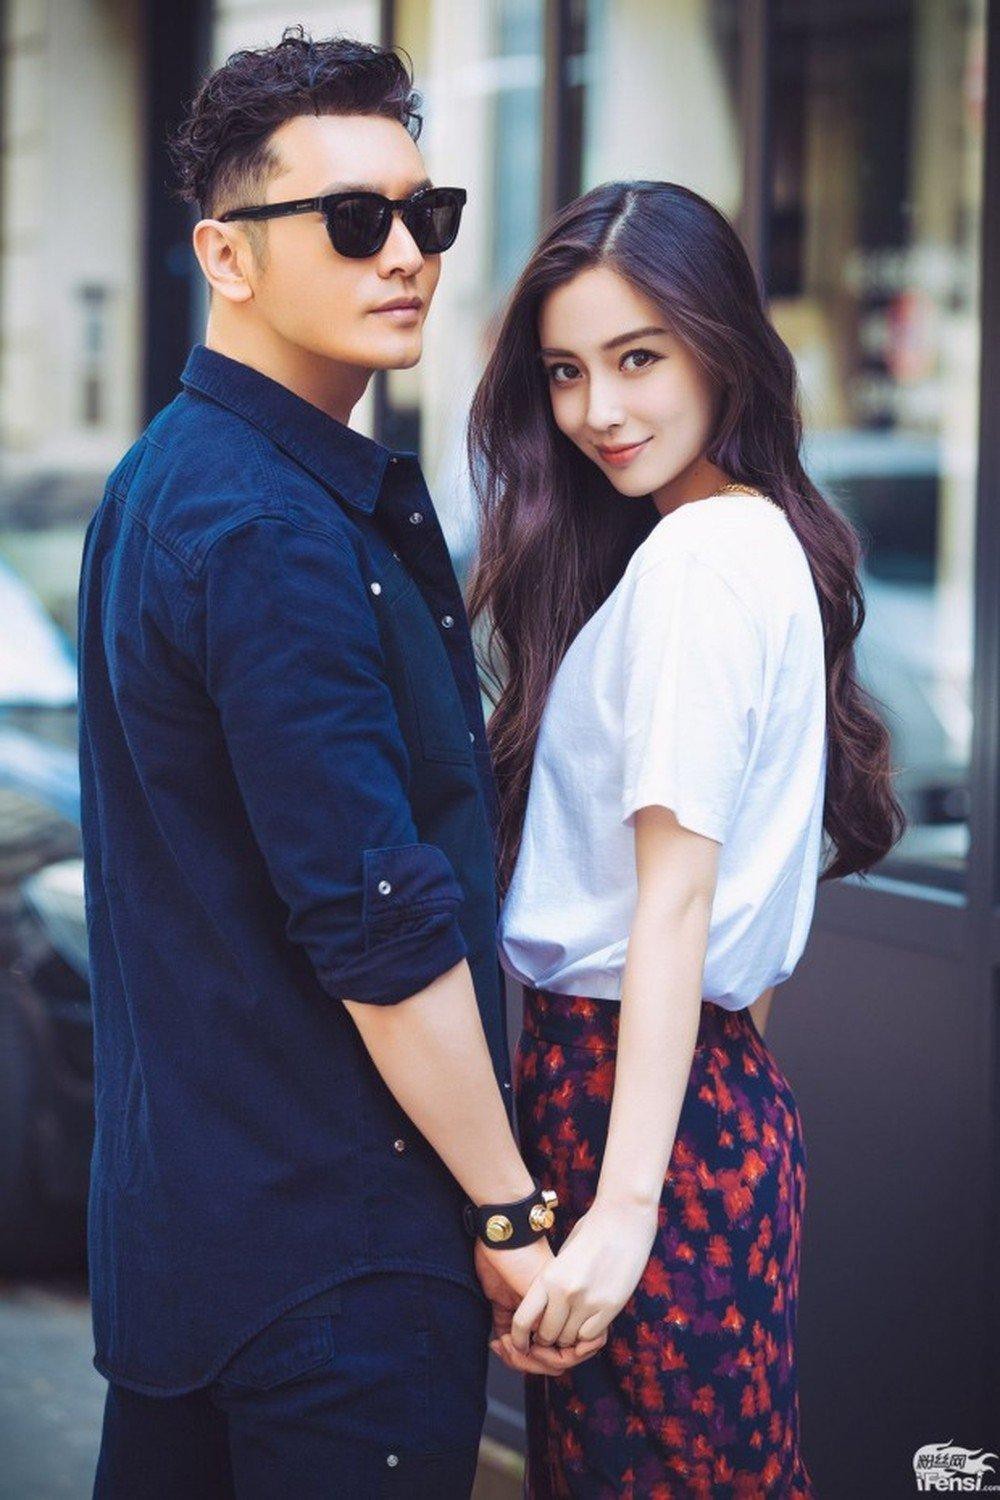  
Cặp vợ chồng hot nhất nhì showbiz cũng từng bị chê bai về diễn xuất (Ảnh Weibo)